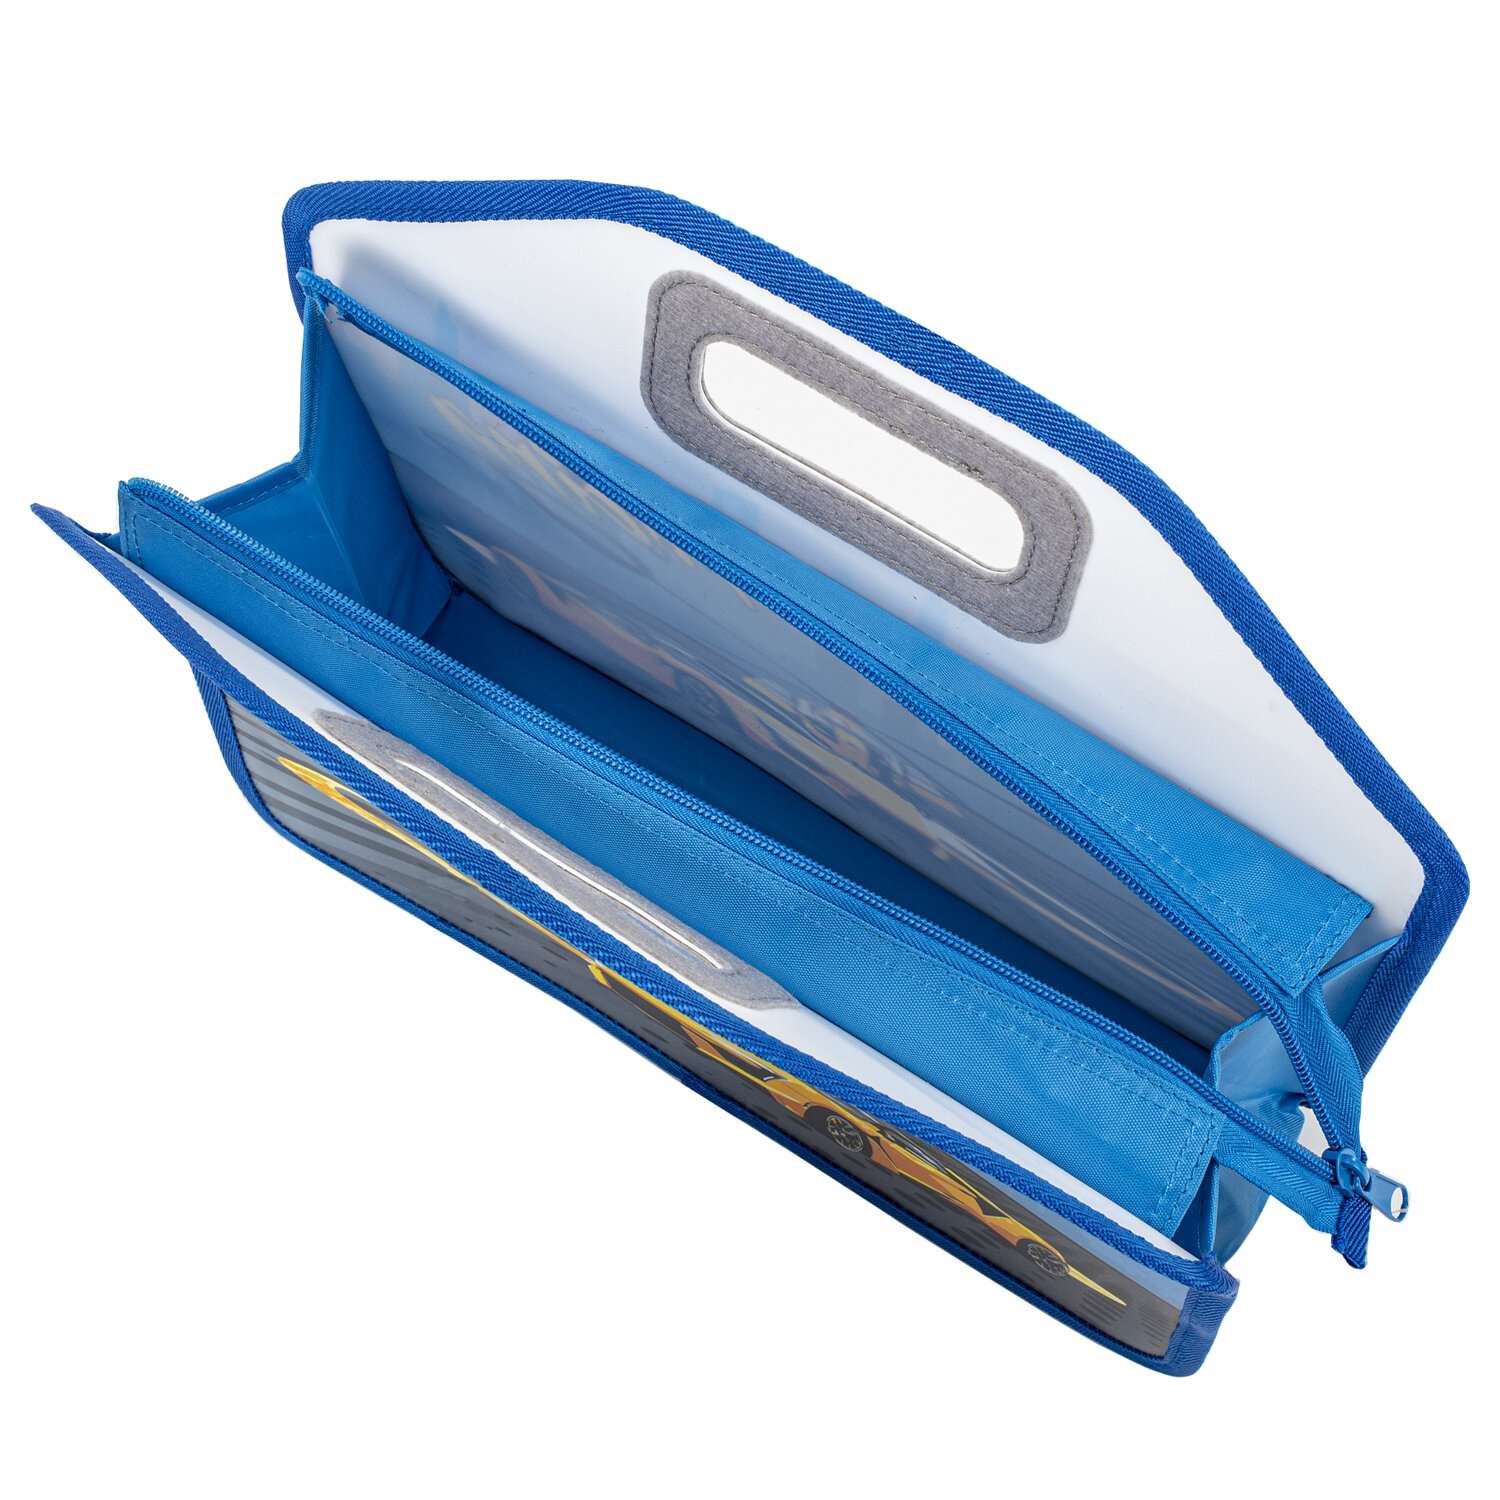 Папка-сумка Юнландия портфель для документов бумаг тетрадей для школы канцелярская с ручками на молнии - фото 6